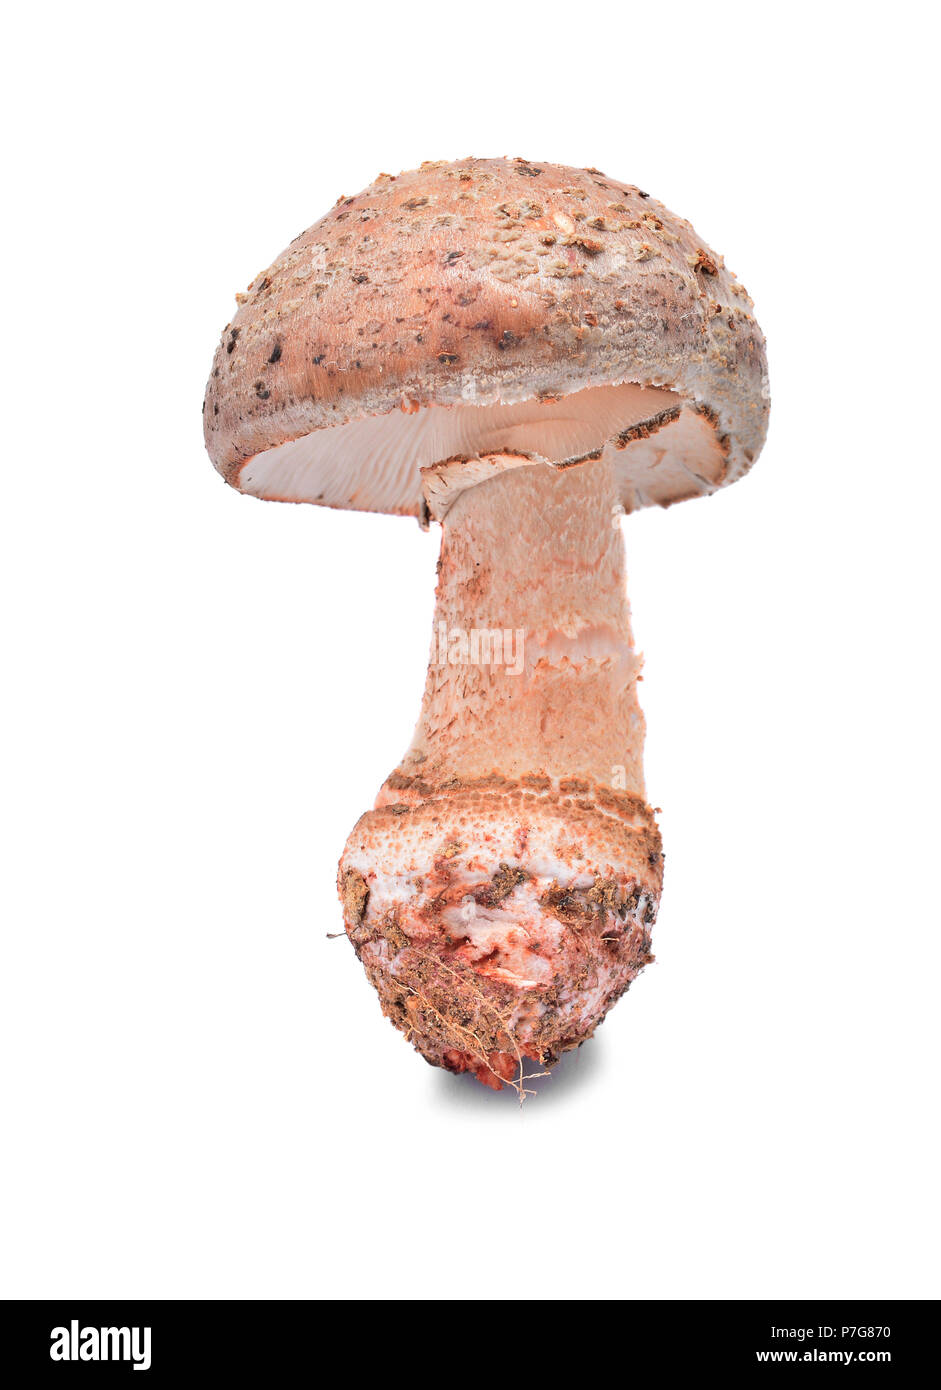 amanita rubescens, the blusher mushroom isolated on white background Stock Photo